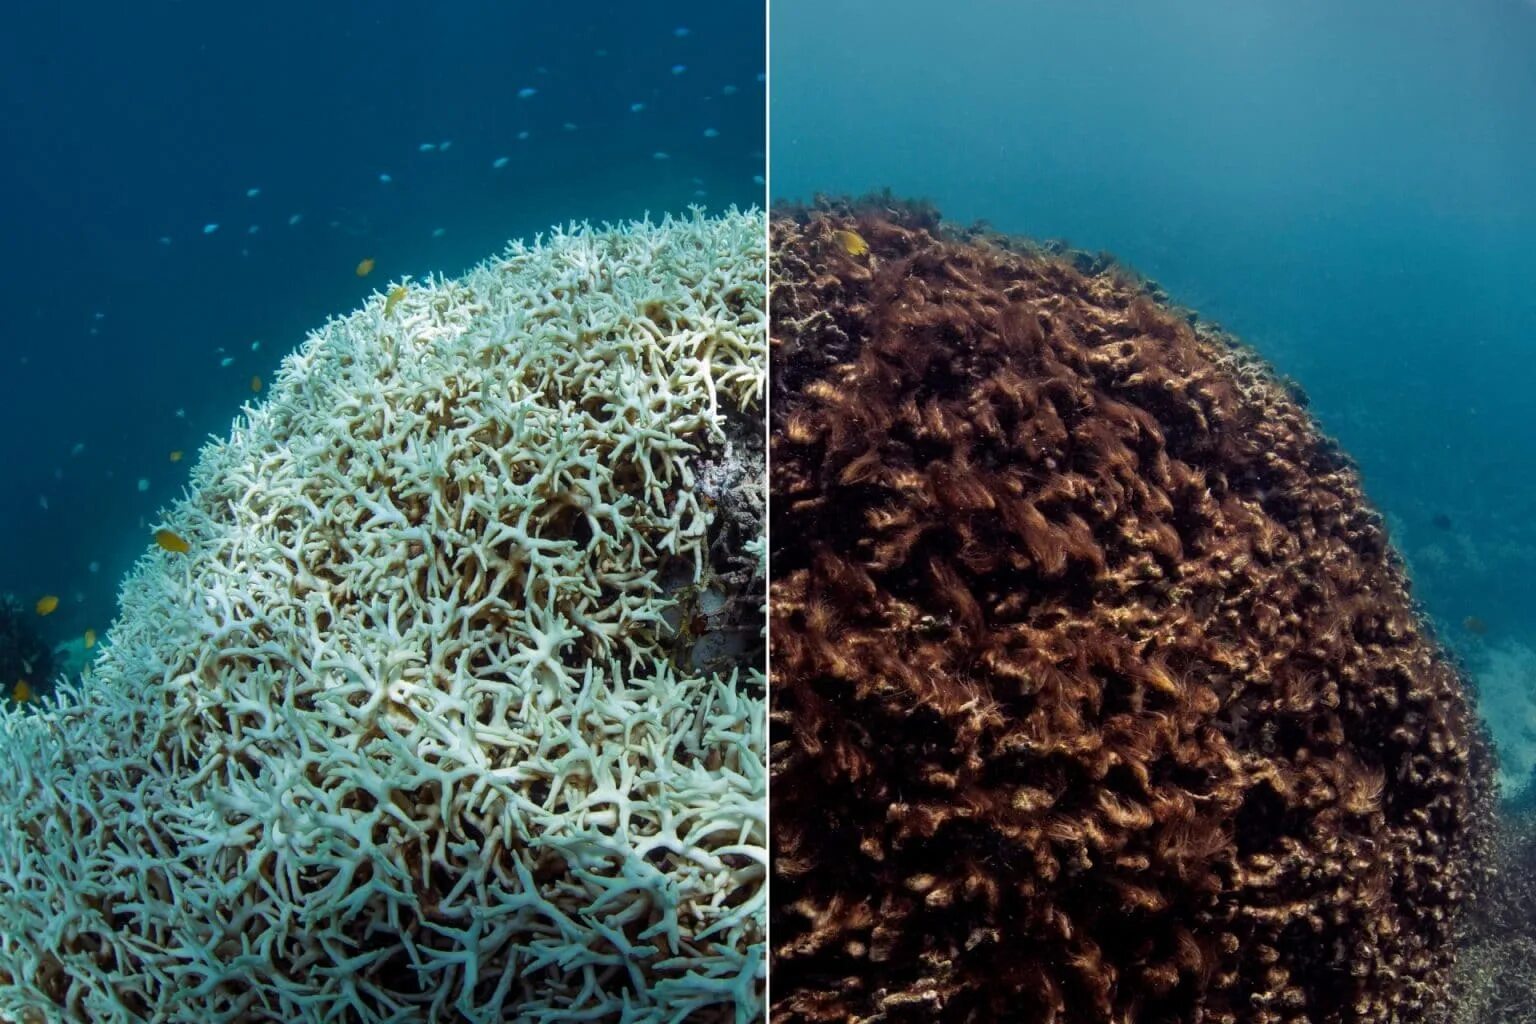 The coral has. Большой Барьерный риф мертвые кораллы. Большой Барьерный риф обесцвечивание. Большой Барьерный риф обесцвечивание кораллов. Большой Барьерный риф коралловые полипы Австралия.